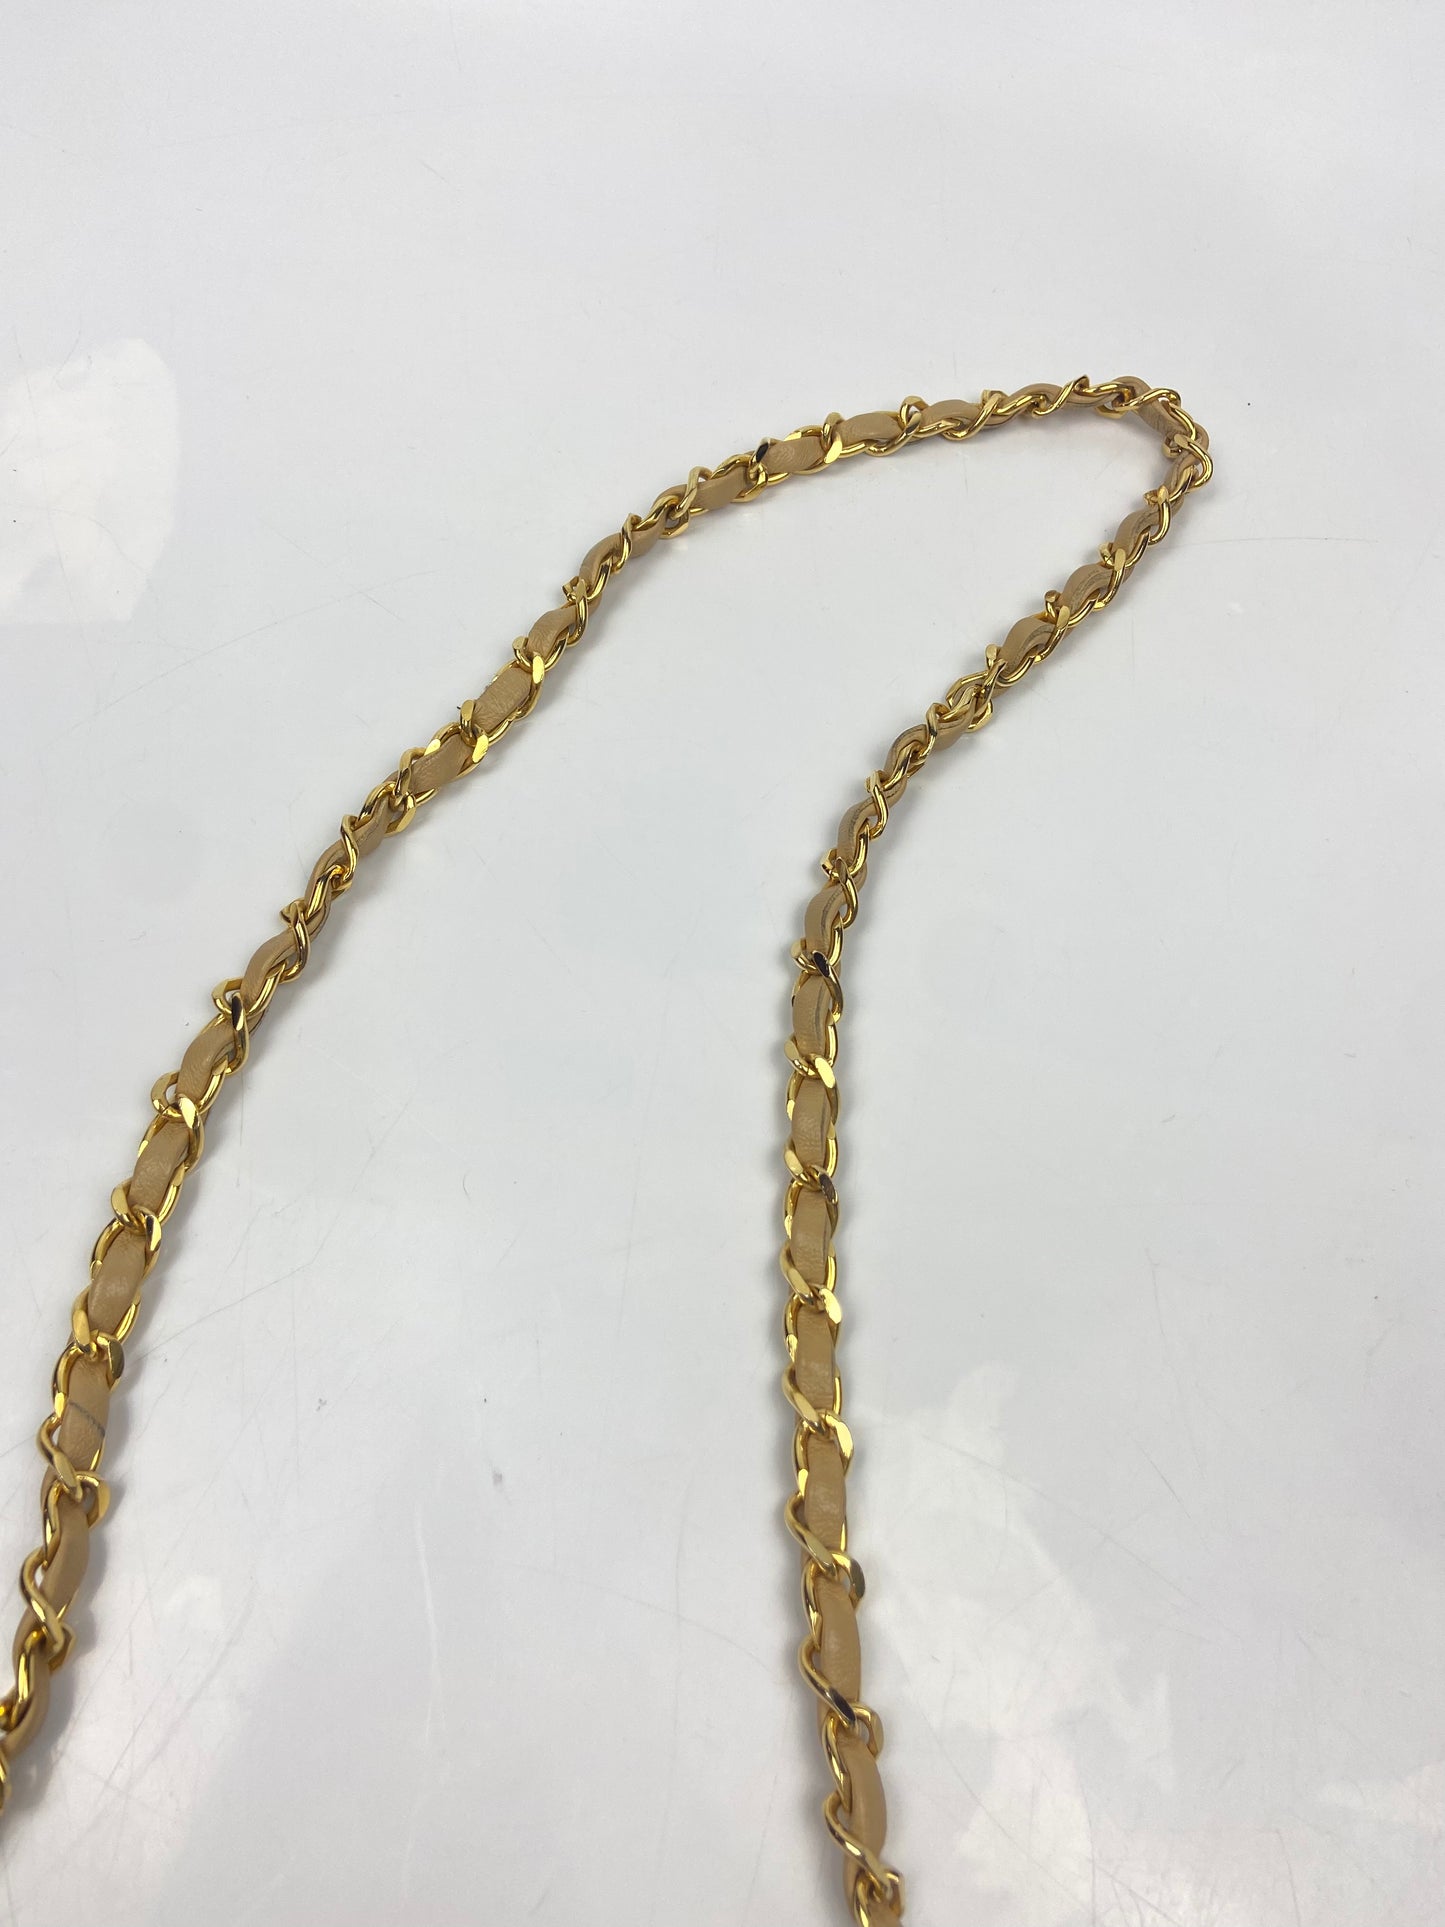 Chanel Recolour Golden Chain WOC